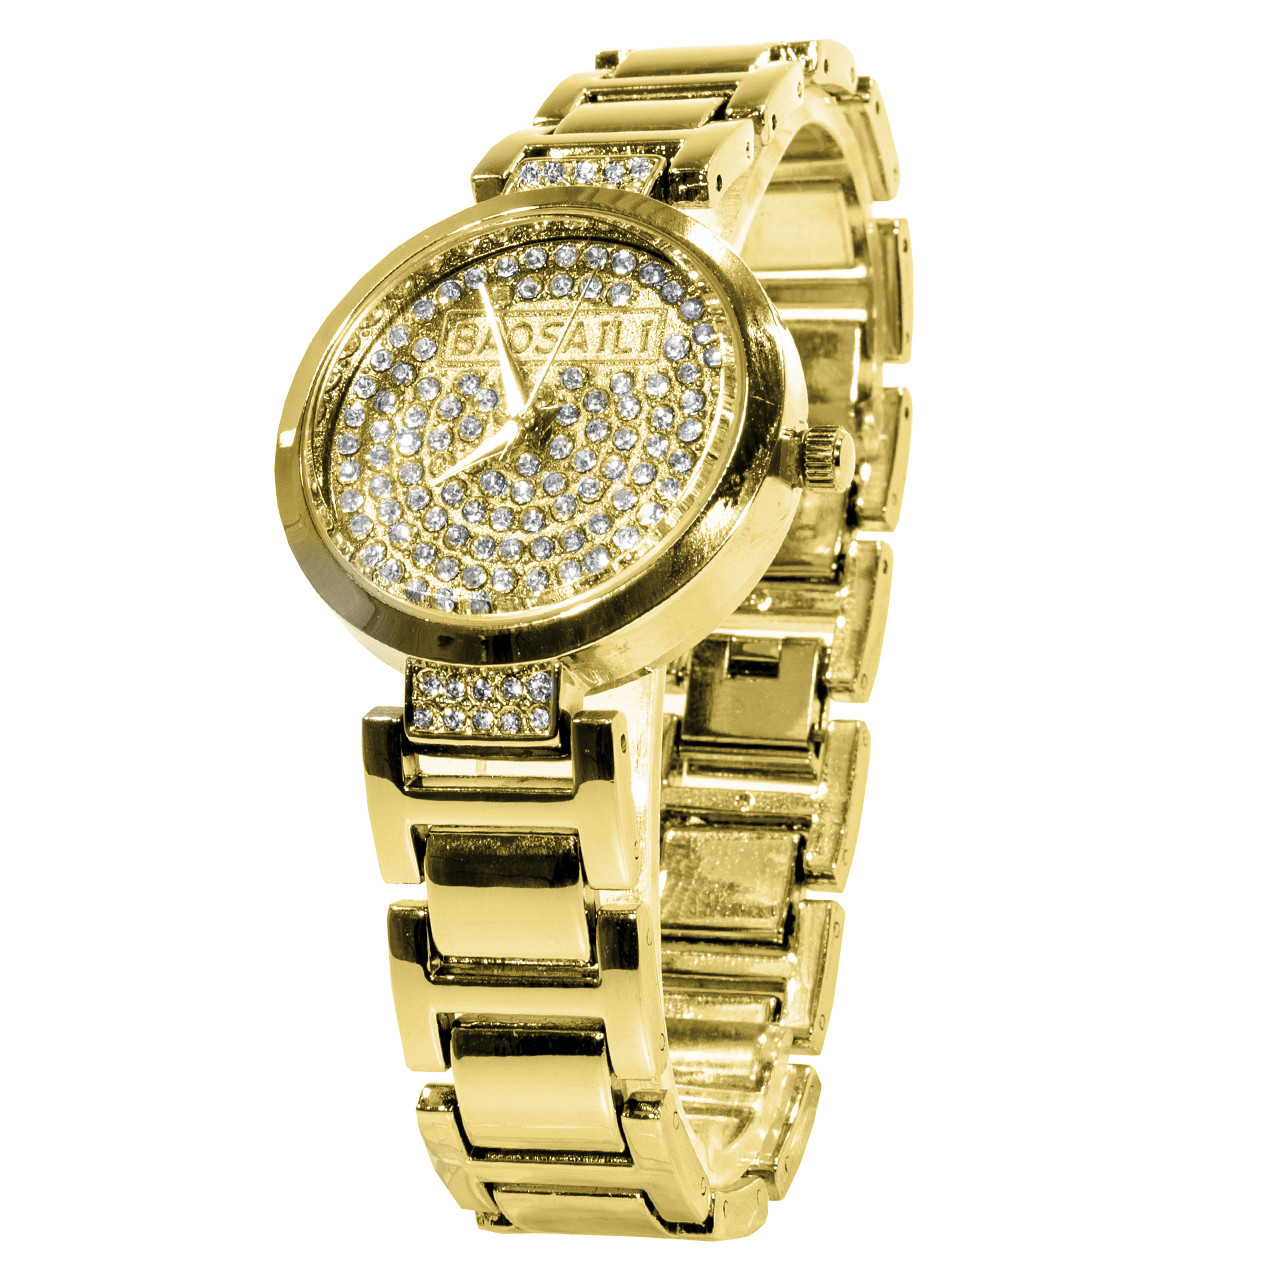 Наручные часы BAOSAILI KJ805 с камнями модный дизайн Баосаили для женщин и девушек Gold (3081-8928)